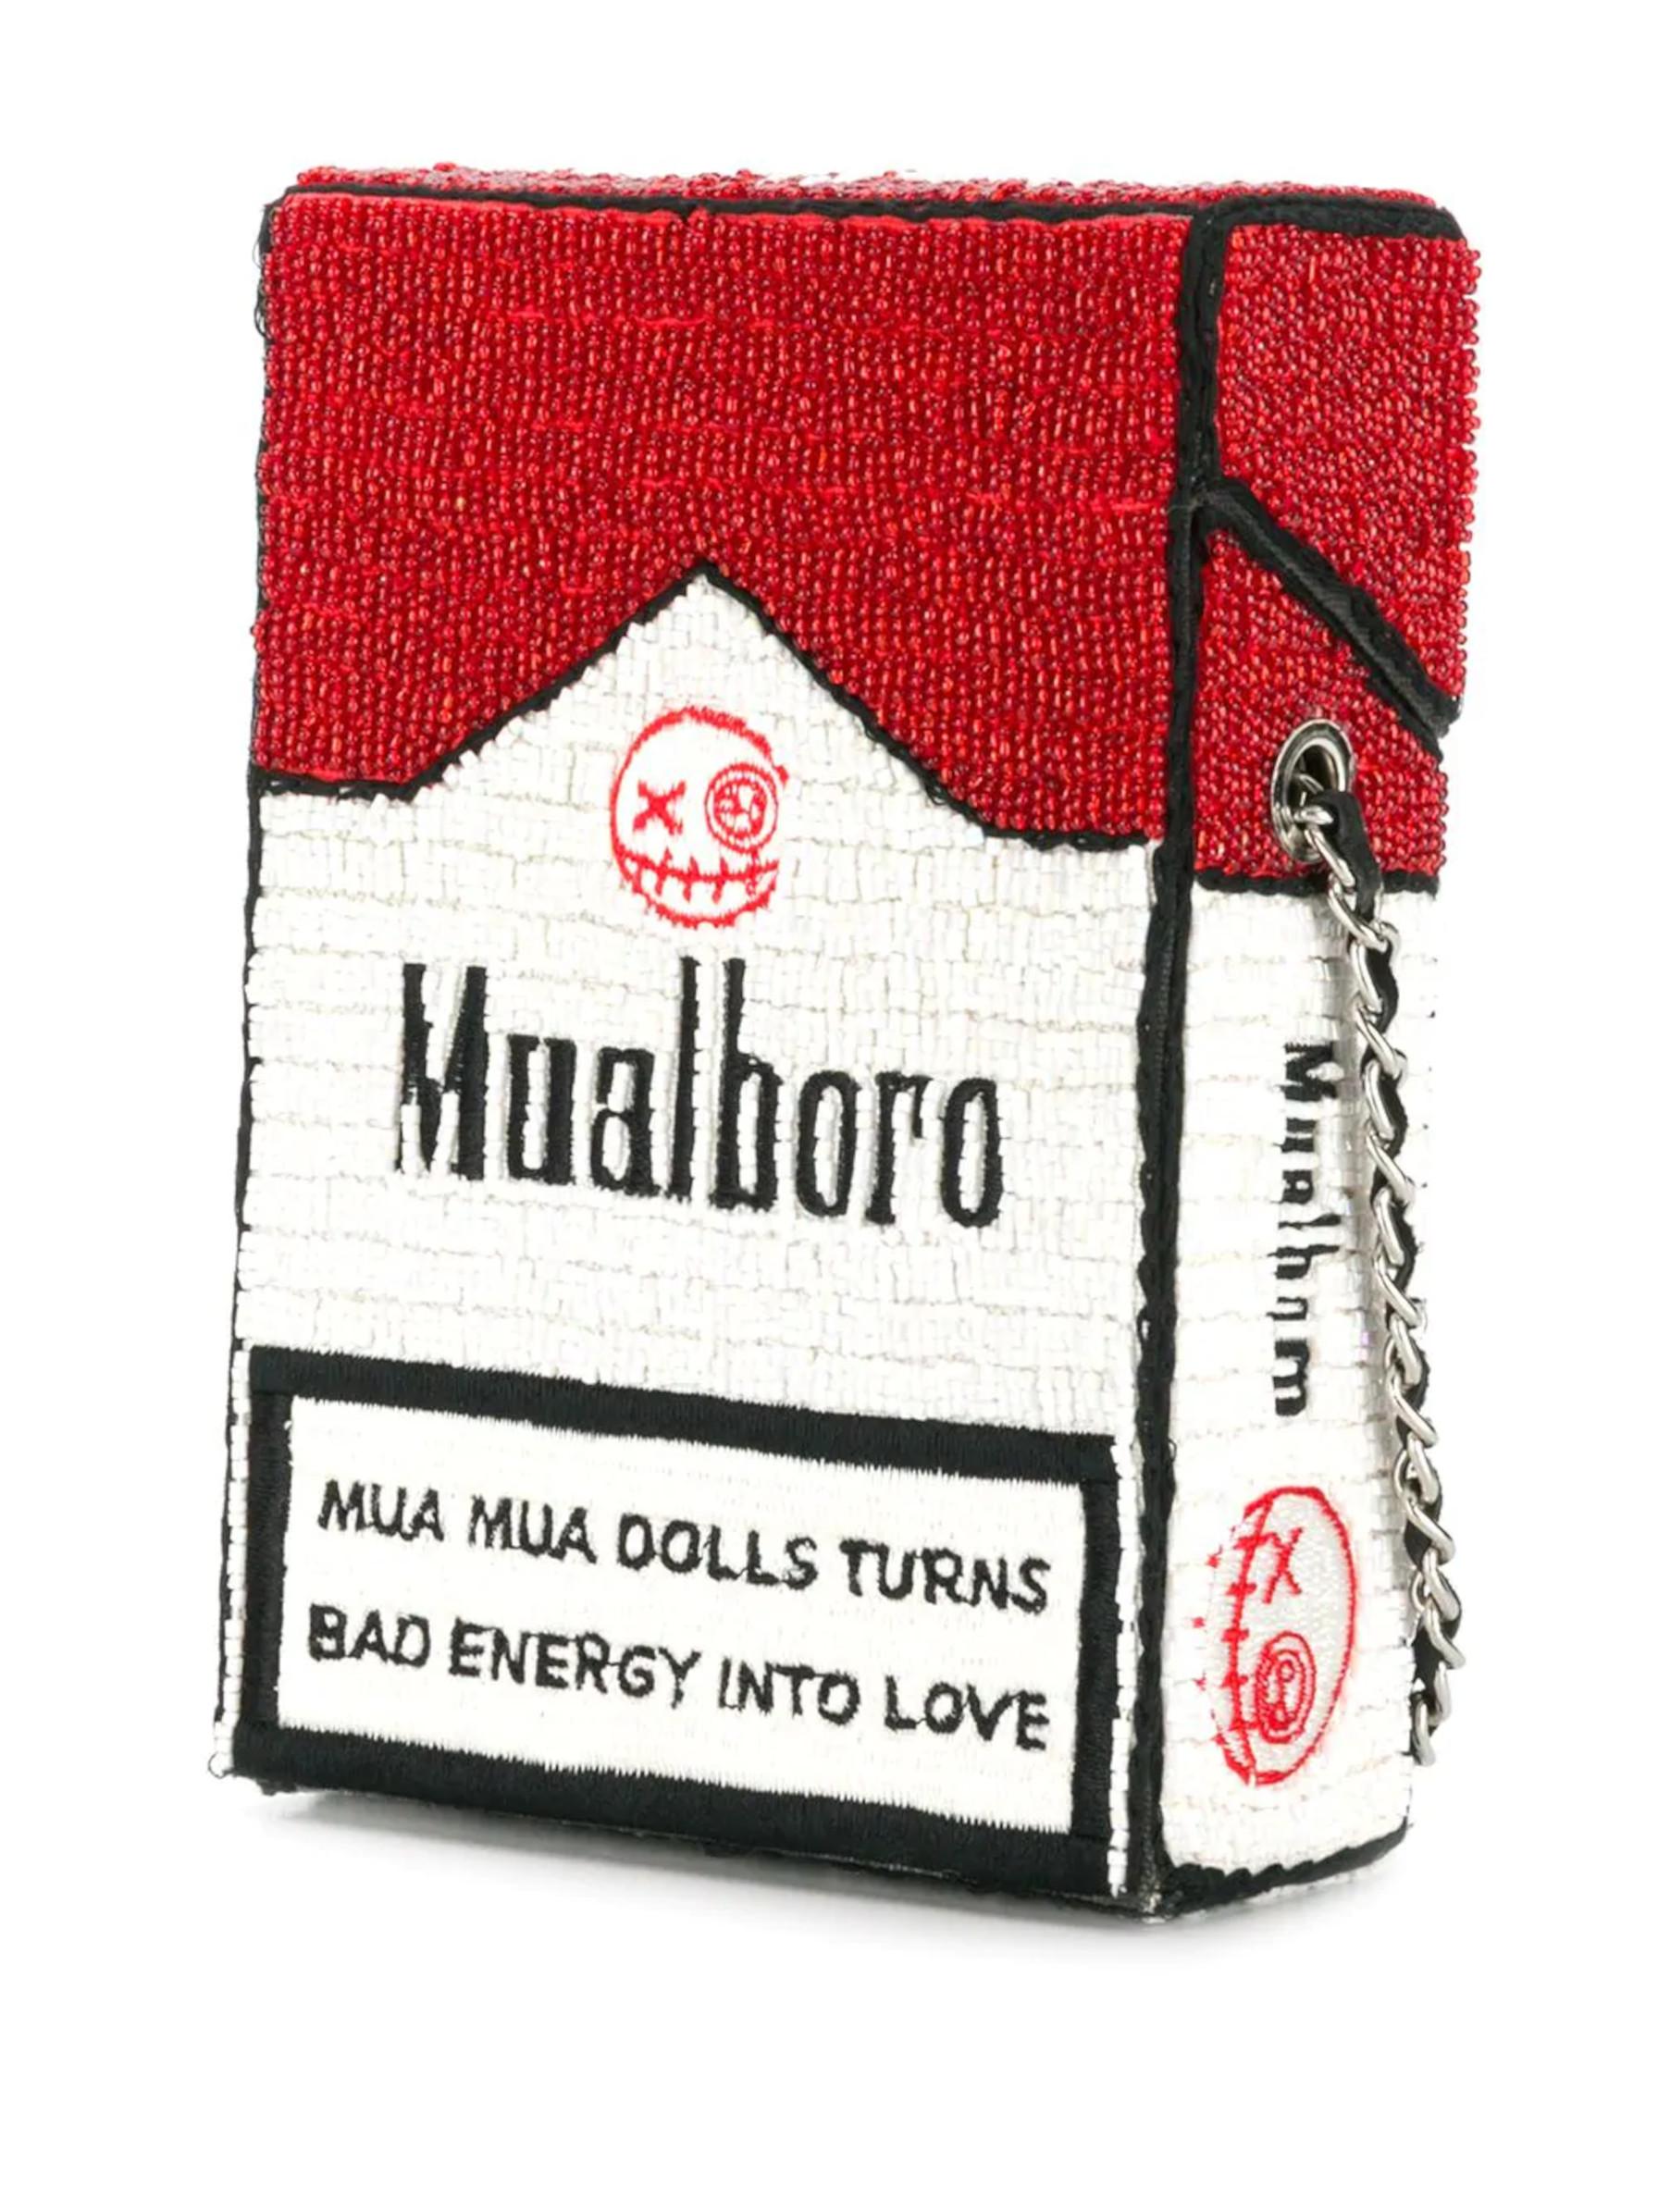 Gray House of Muamua hand beaded mualboro red Cigarette bag